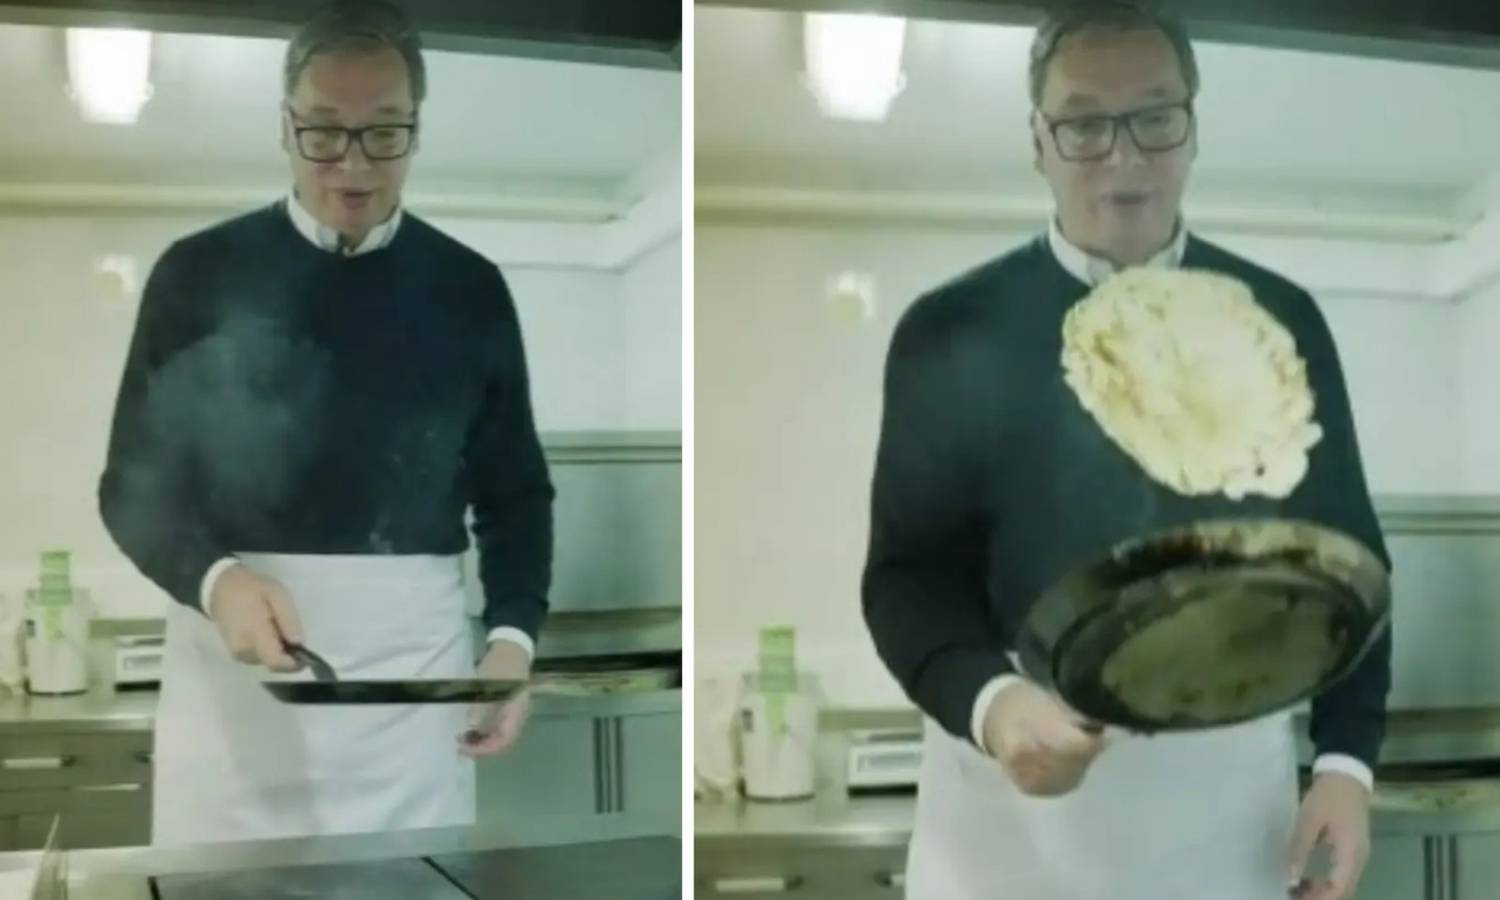 VIDEO Vučić pokazao kako vrti palačinke: E, uništio sam oblik, ova će biti za mene. Smiju mi se